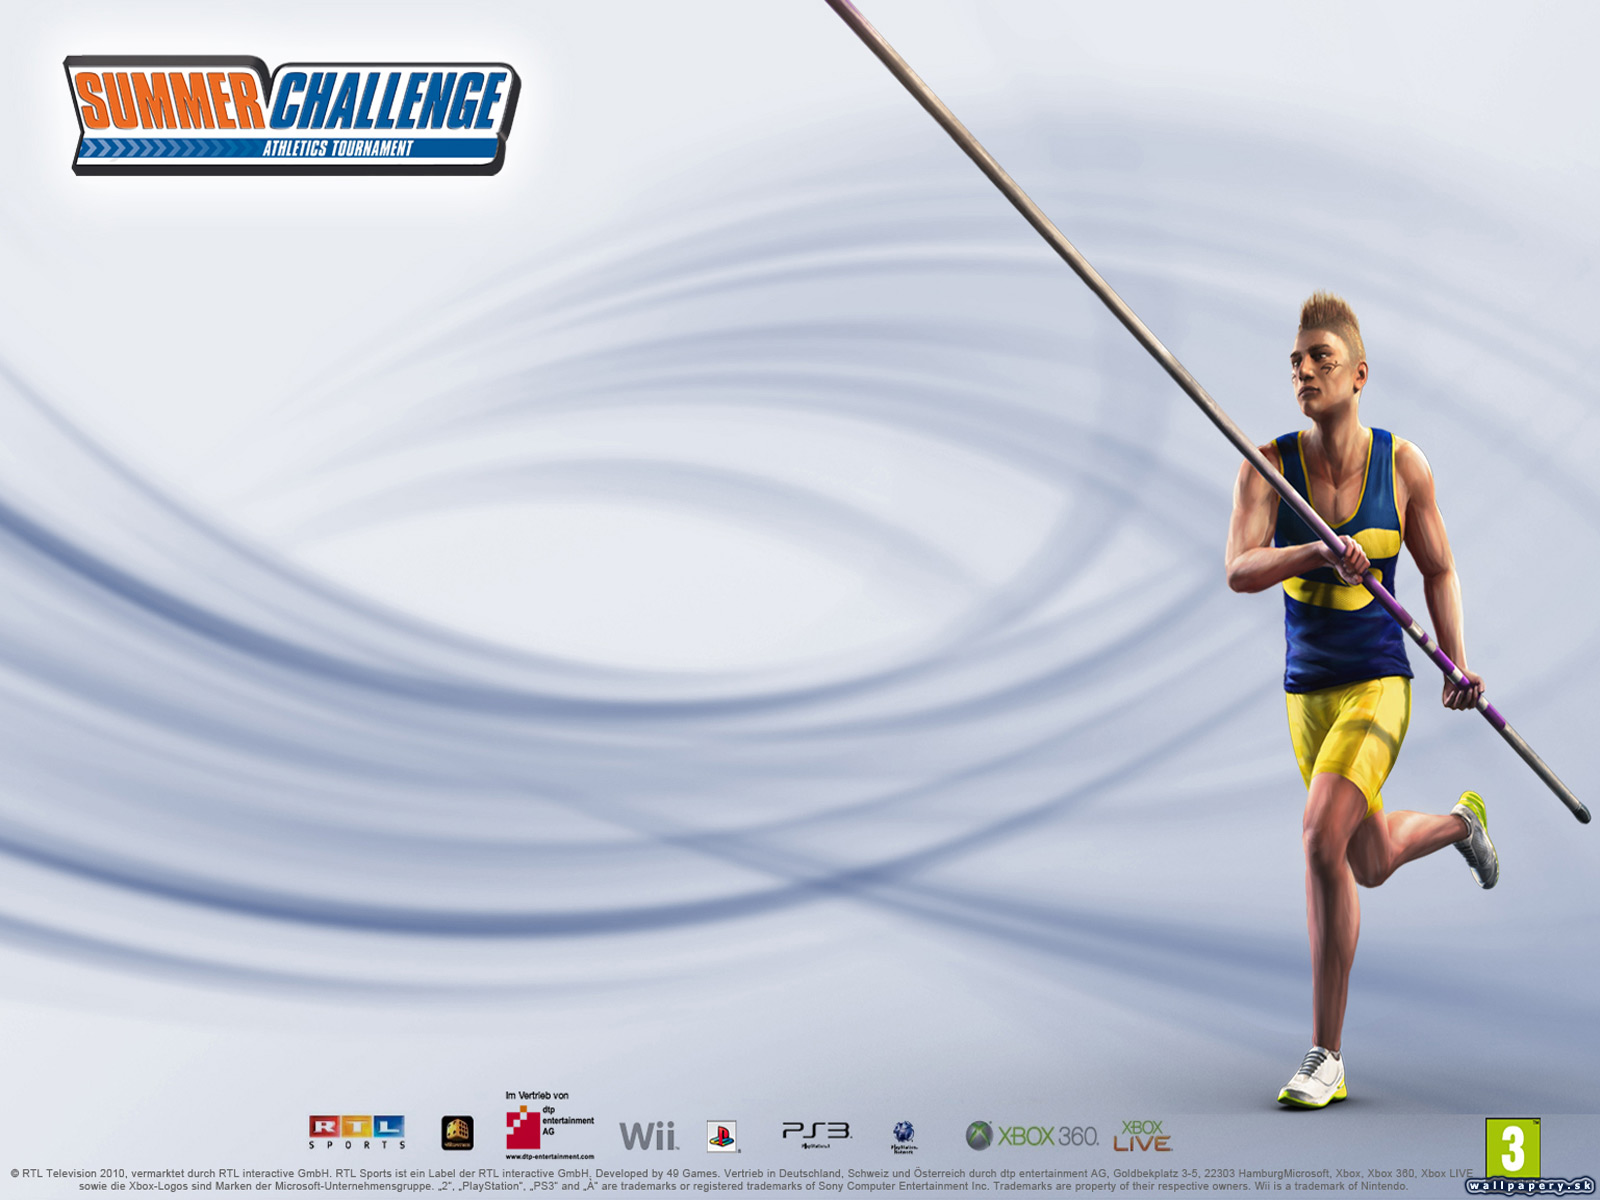 Summer Challenge: Athletics Tournament - wallpaper 4